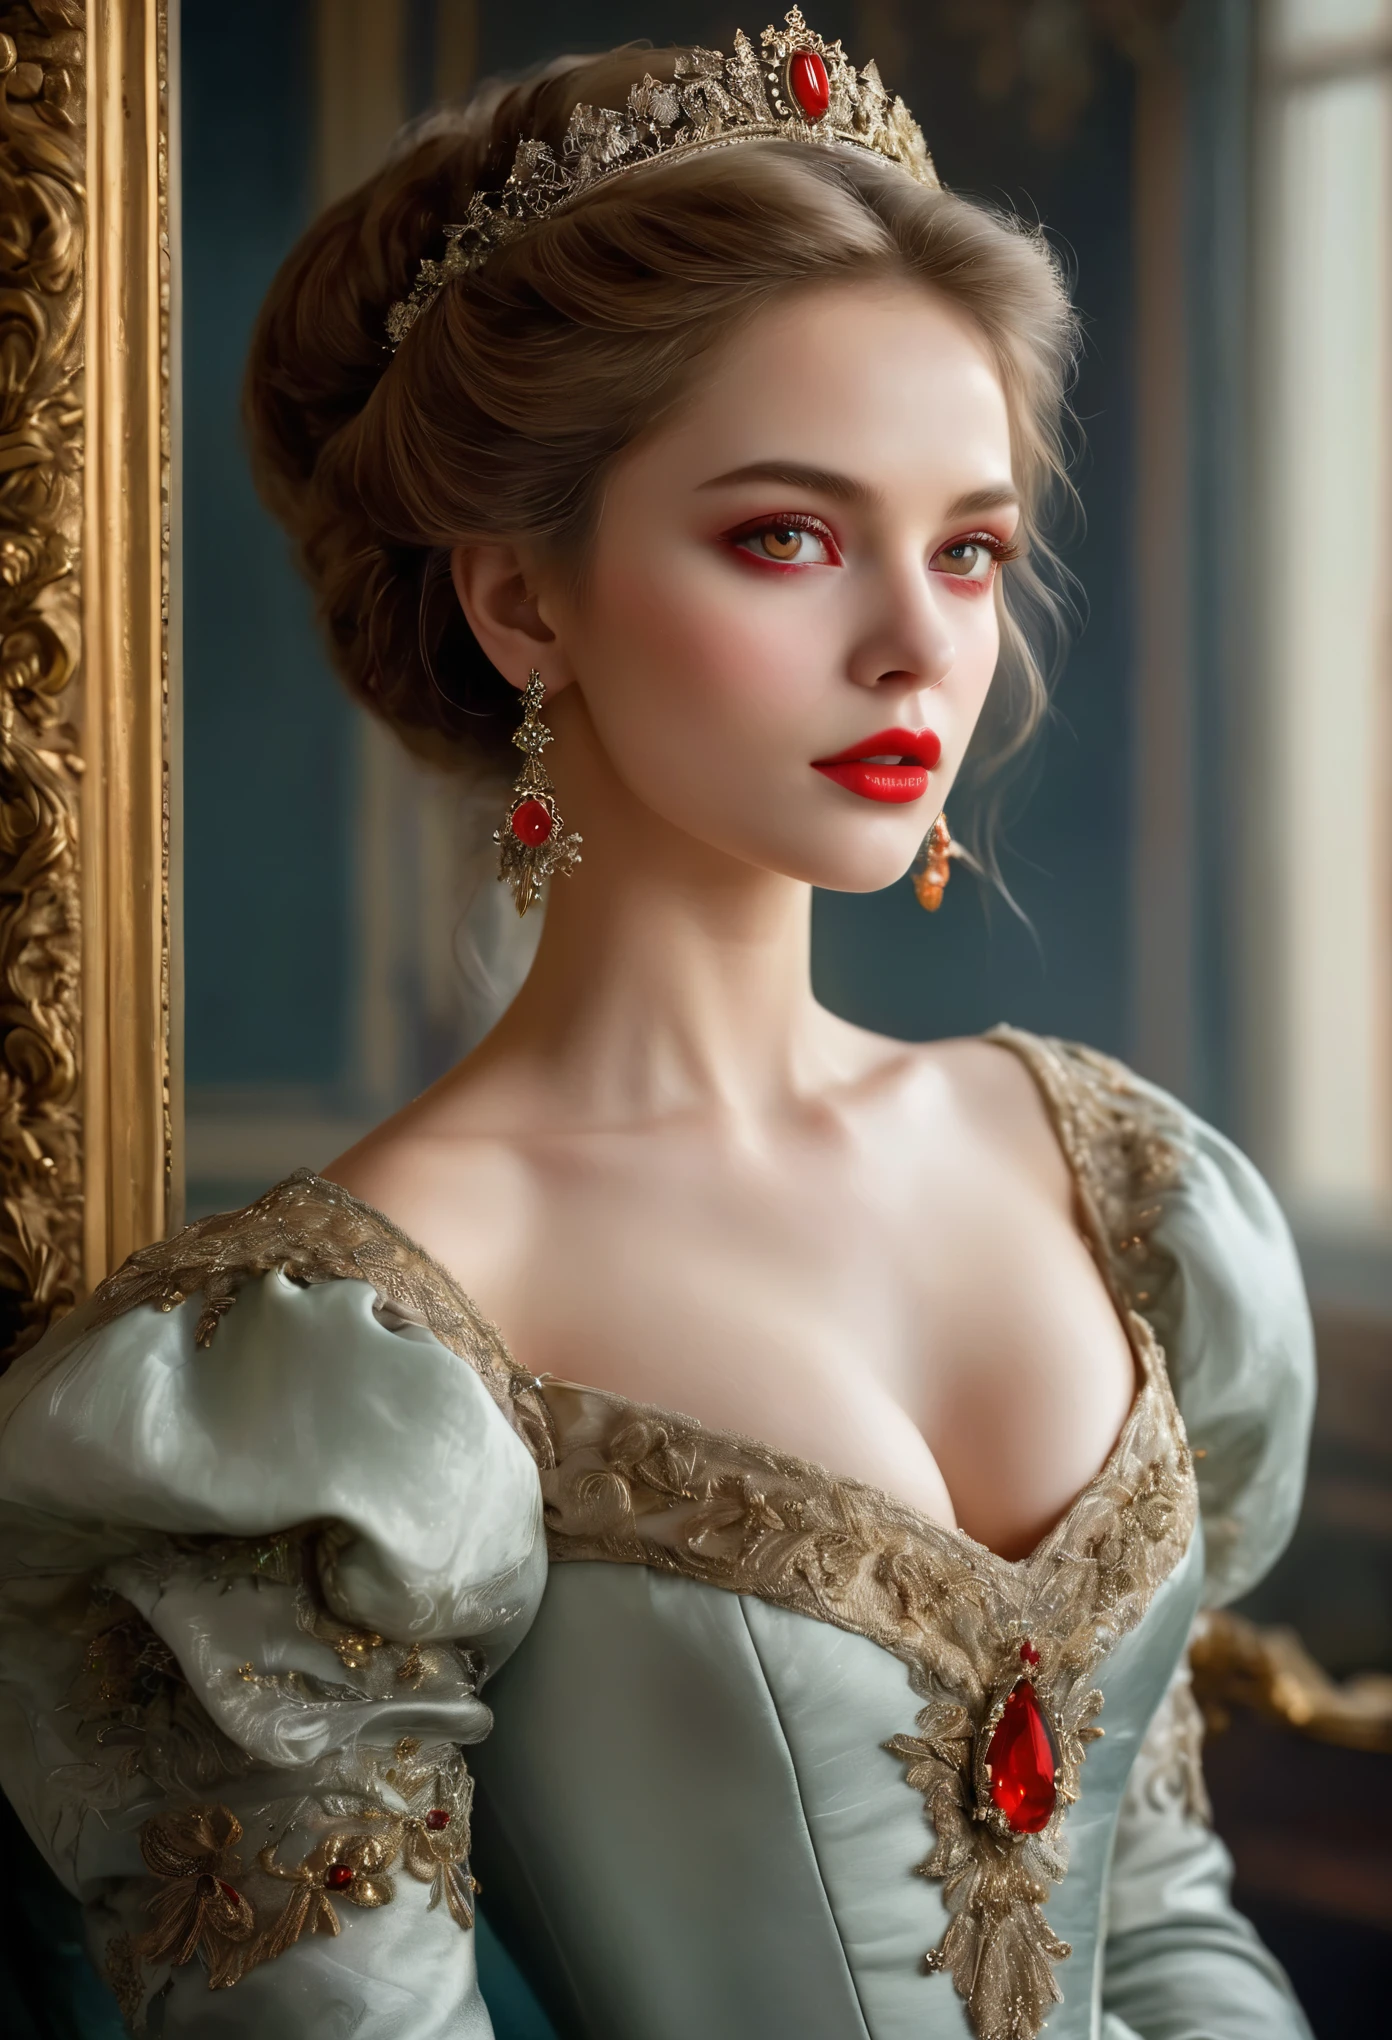 (高解像度,傑作:1.2),(現実的:1.37)比類のない美しさを持つ18世紀ロシアの吸血鬼の少女の肖像画. 彼女は魅惑的な赤い目と繊細なバラ色の唇を持っています. 長い牙, 肖像画は細部まで丁寧に描かれています., 彼女の特徴の微妙なニュアンスを捉える. 彼女は美しいシルクのガウンを着ています, 複雑なレースと繊細な刺繍で飾られた. この絵は当時の贅沢さを物語っている., 背景には豪華なベルベットのカーテンと金色の家具. 照明は柔らかく拡散している, 女の子を強調する&#39;優雅な美しさ. 色彩は鮮やかで豊かです, 魅力的なビジュアル体験を創造する. (この肖像画は古典的な肖像画のスタイルで描かれている:1.5), 当時の有名な芸術家の作品を彷彿とさせる. それは優雅さを醸し出しています, グレース, 洗練さ. 鋭く長い爪, (深紅の目:1.4), 炎のように赤い目, (唇の隙間から鋭い牙が見える:1.8), (首に噛み跡がある:1.5),２穴が2つあります, (青白い肌:1.4),